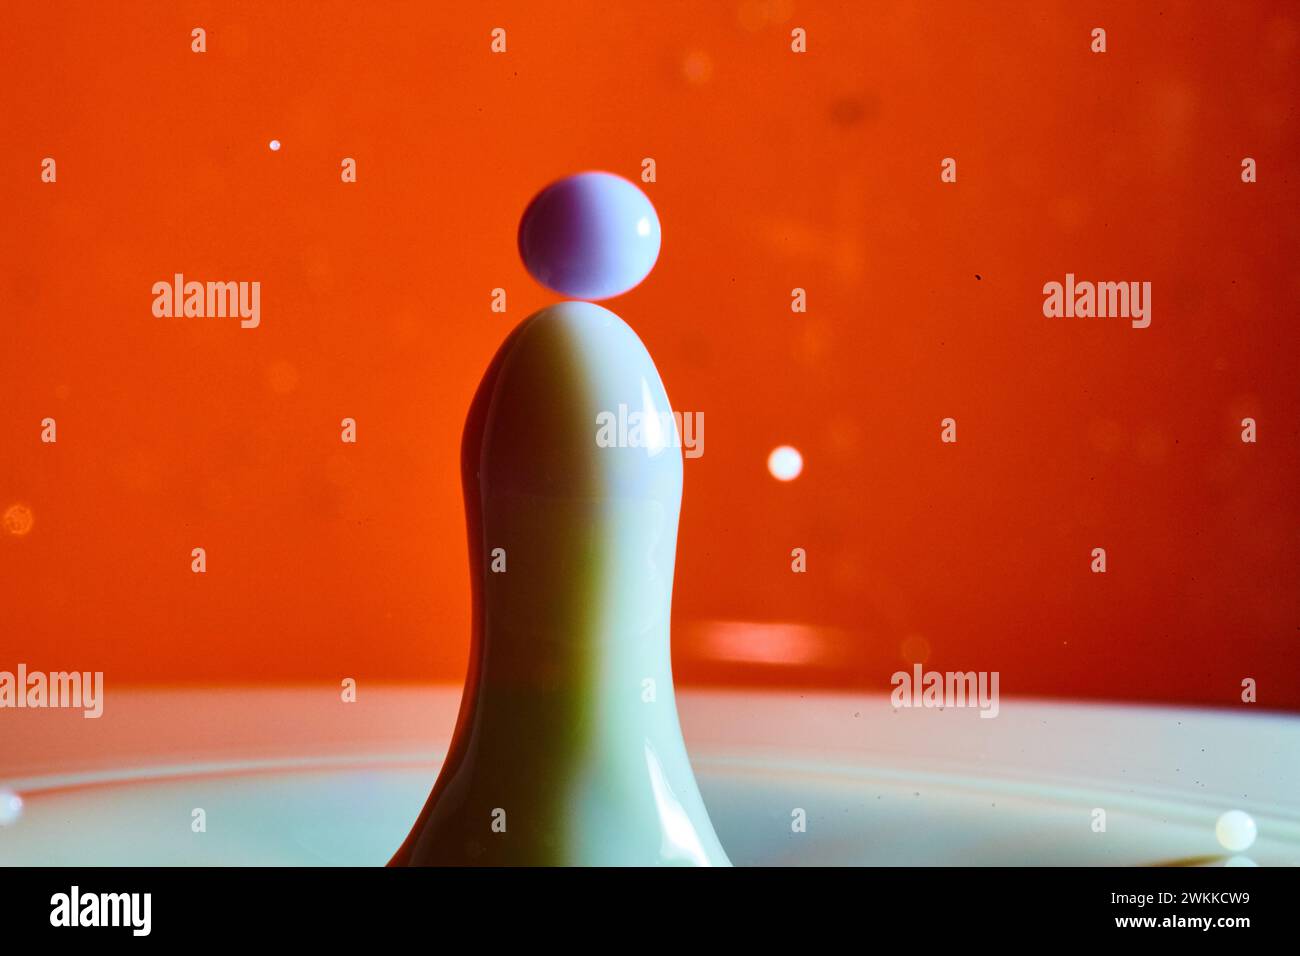 Eleganter Milk Drop Collision auf leuchtendem orangefarbenem Hintergrund Stockfoto